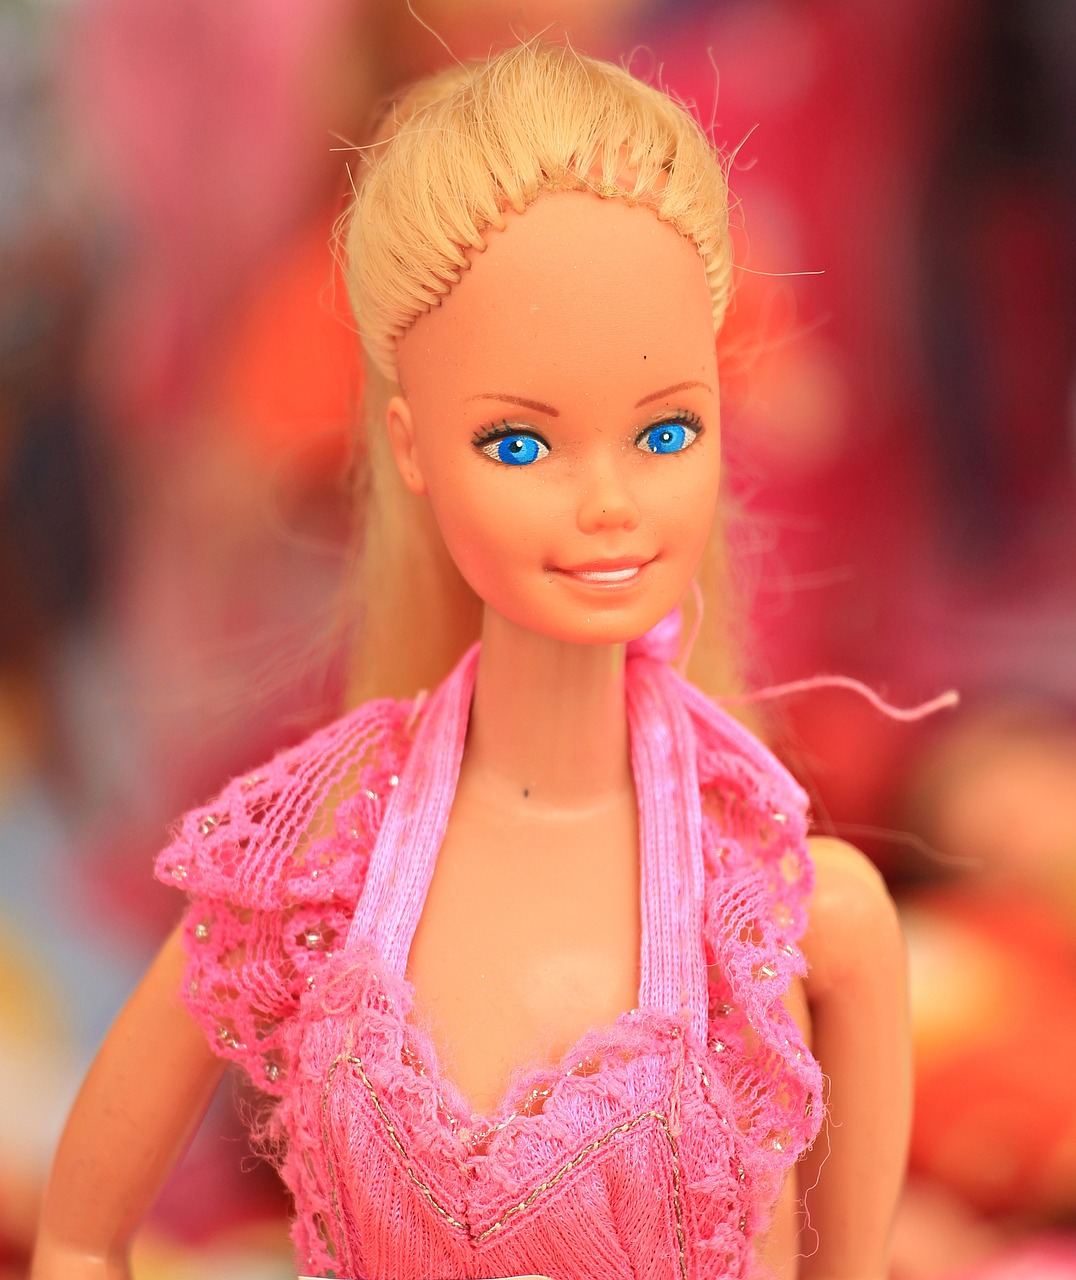 L'invincible Barbie à la conquête des territoires... inappropriés